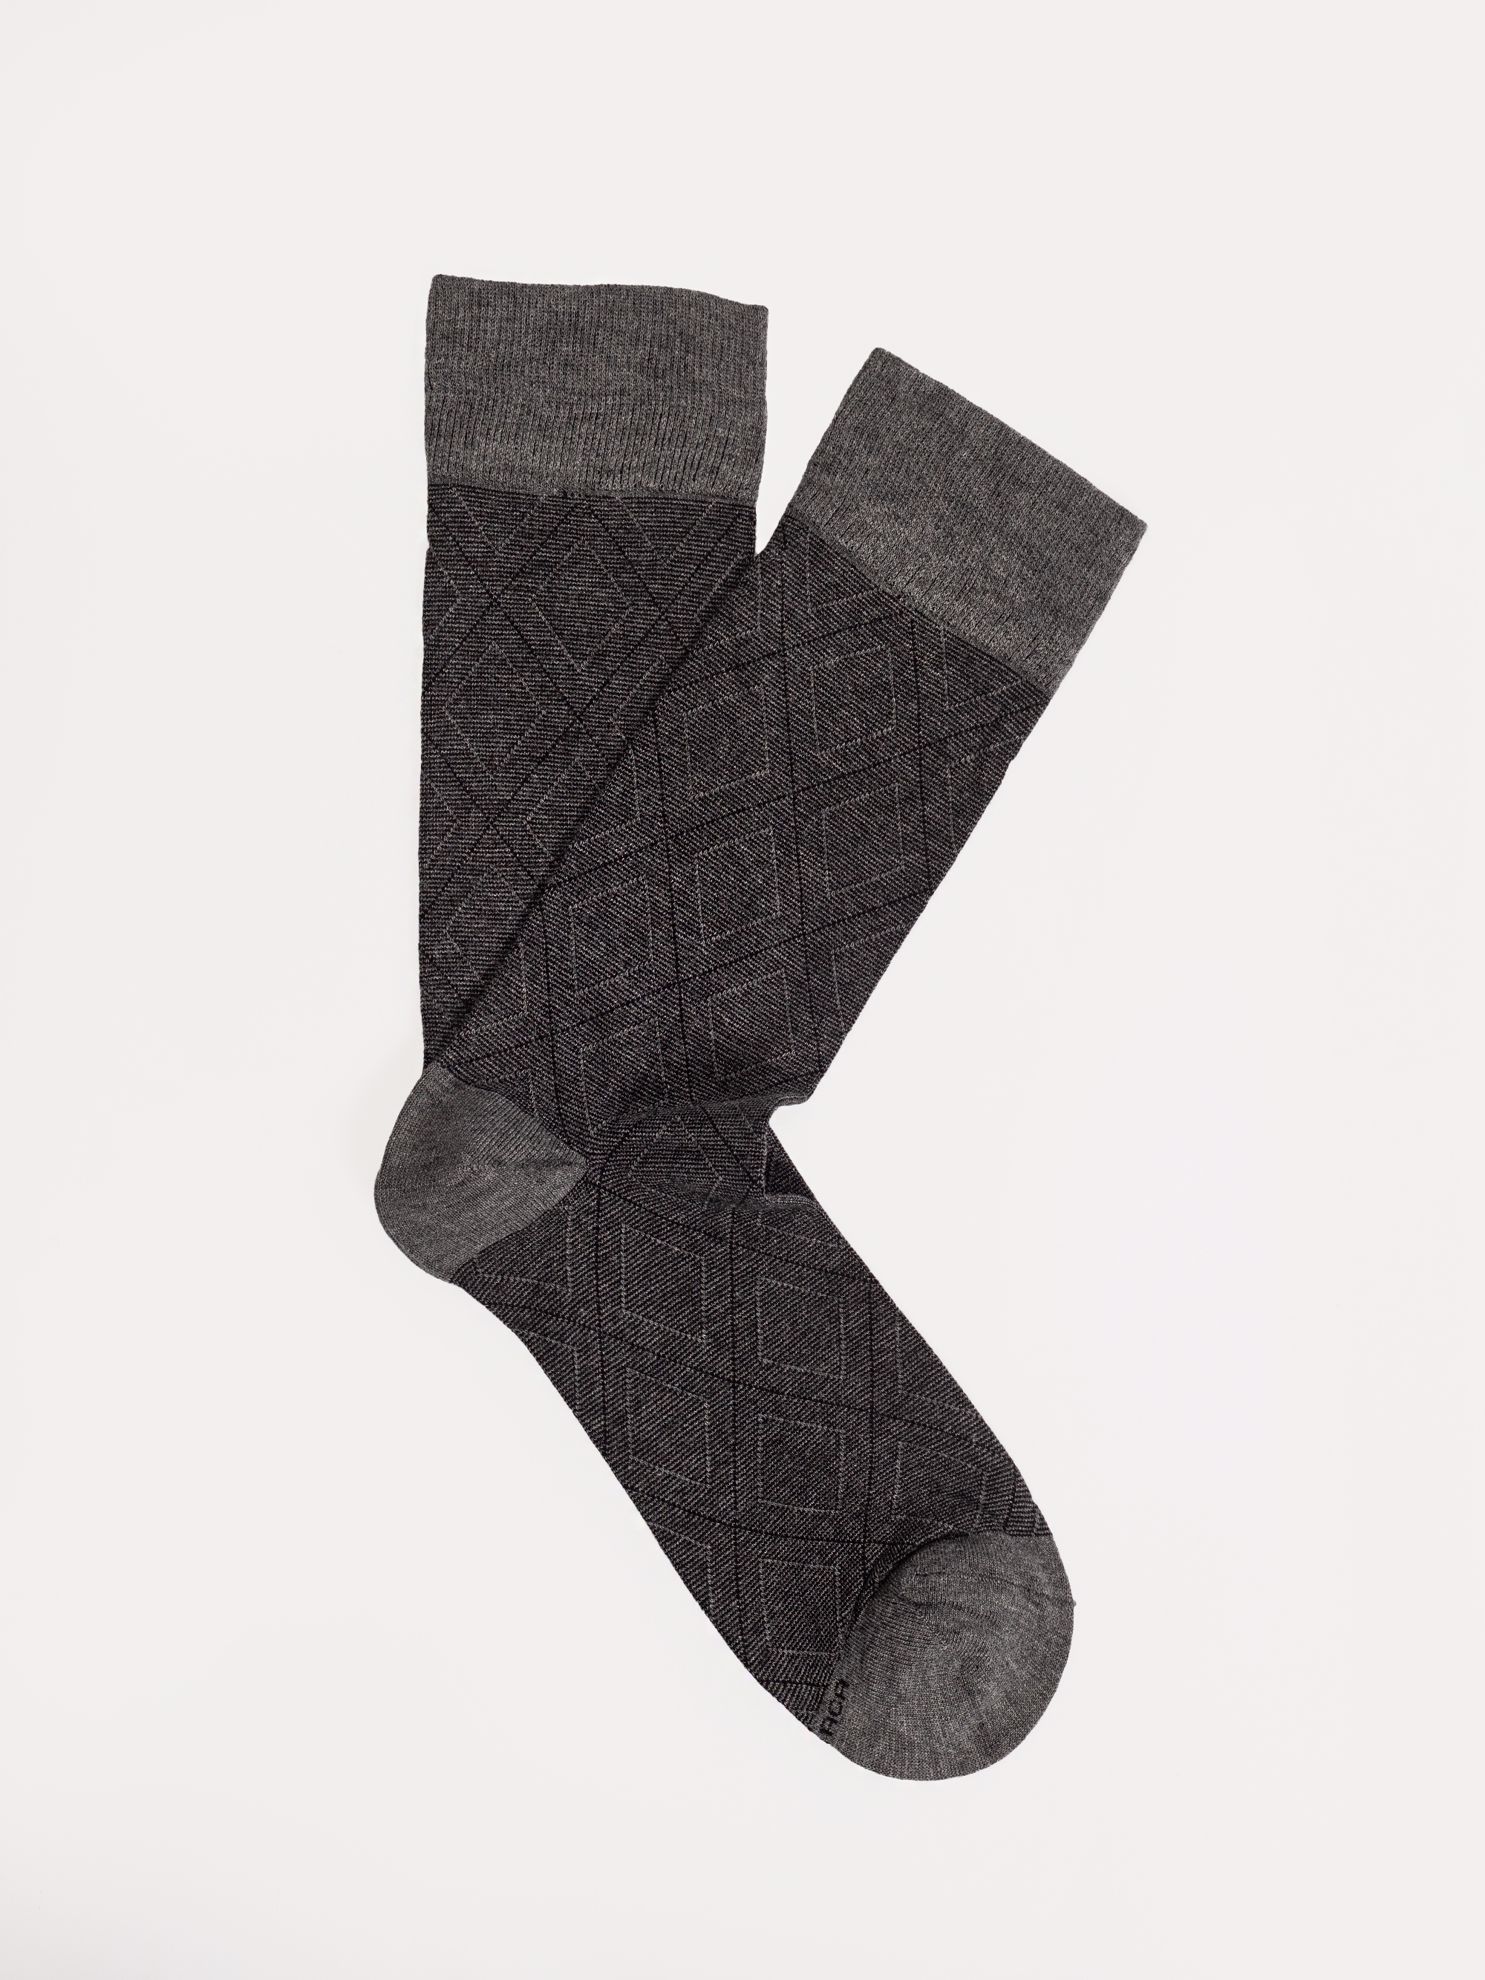 Karaca Erkek Soket Çorap-Gri Melanj. ürün görseli